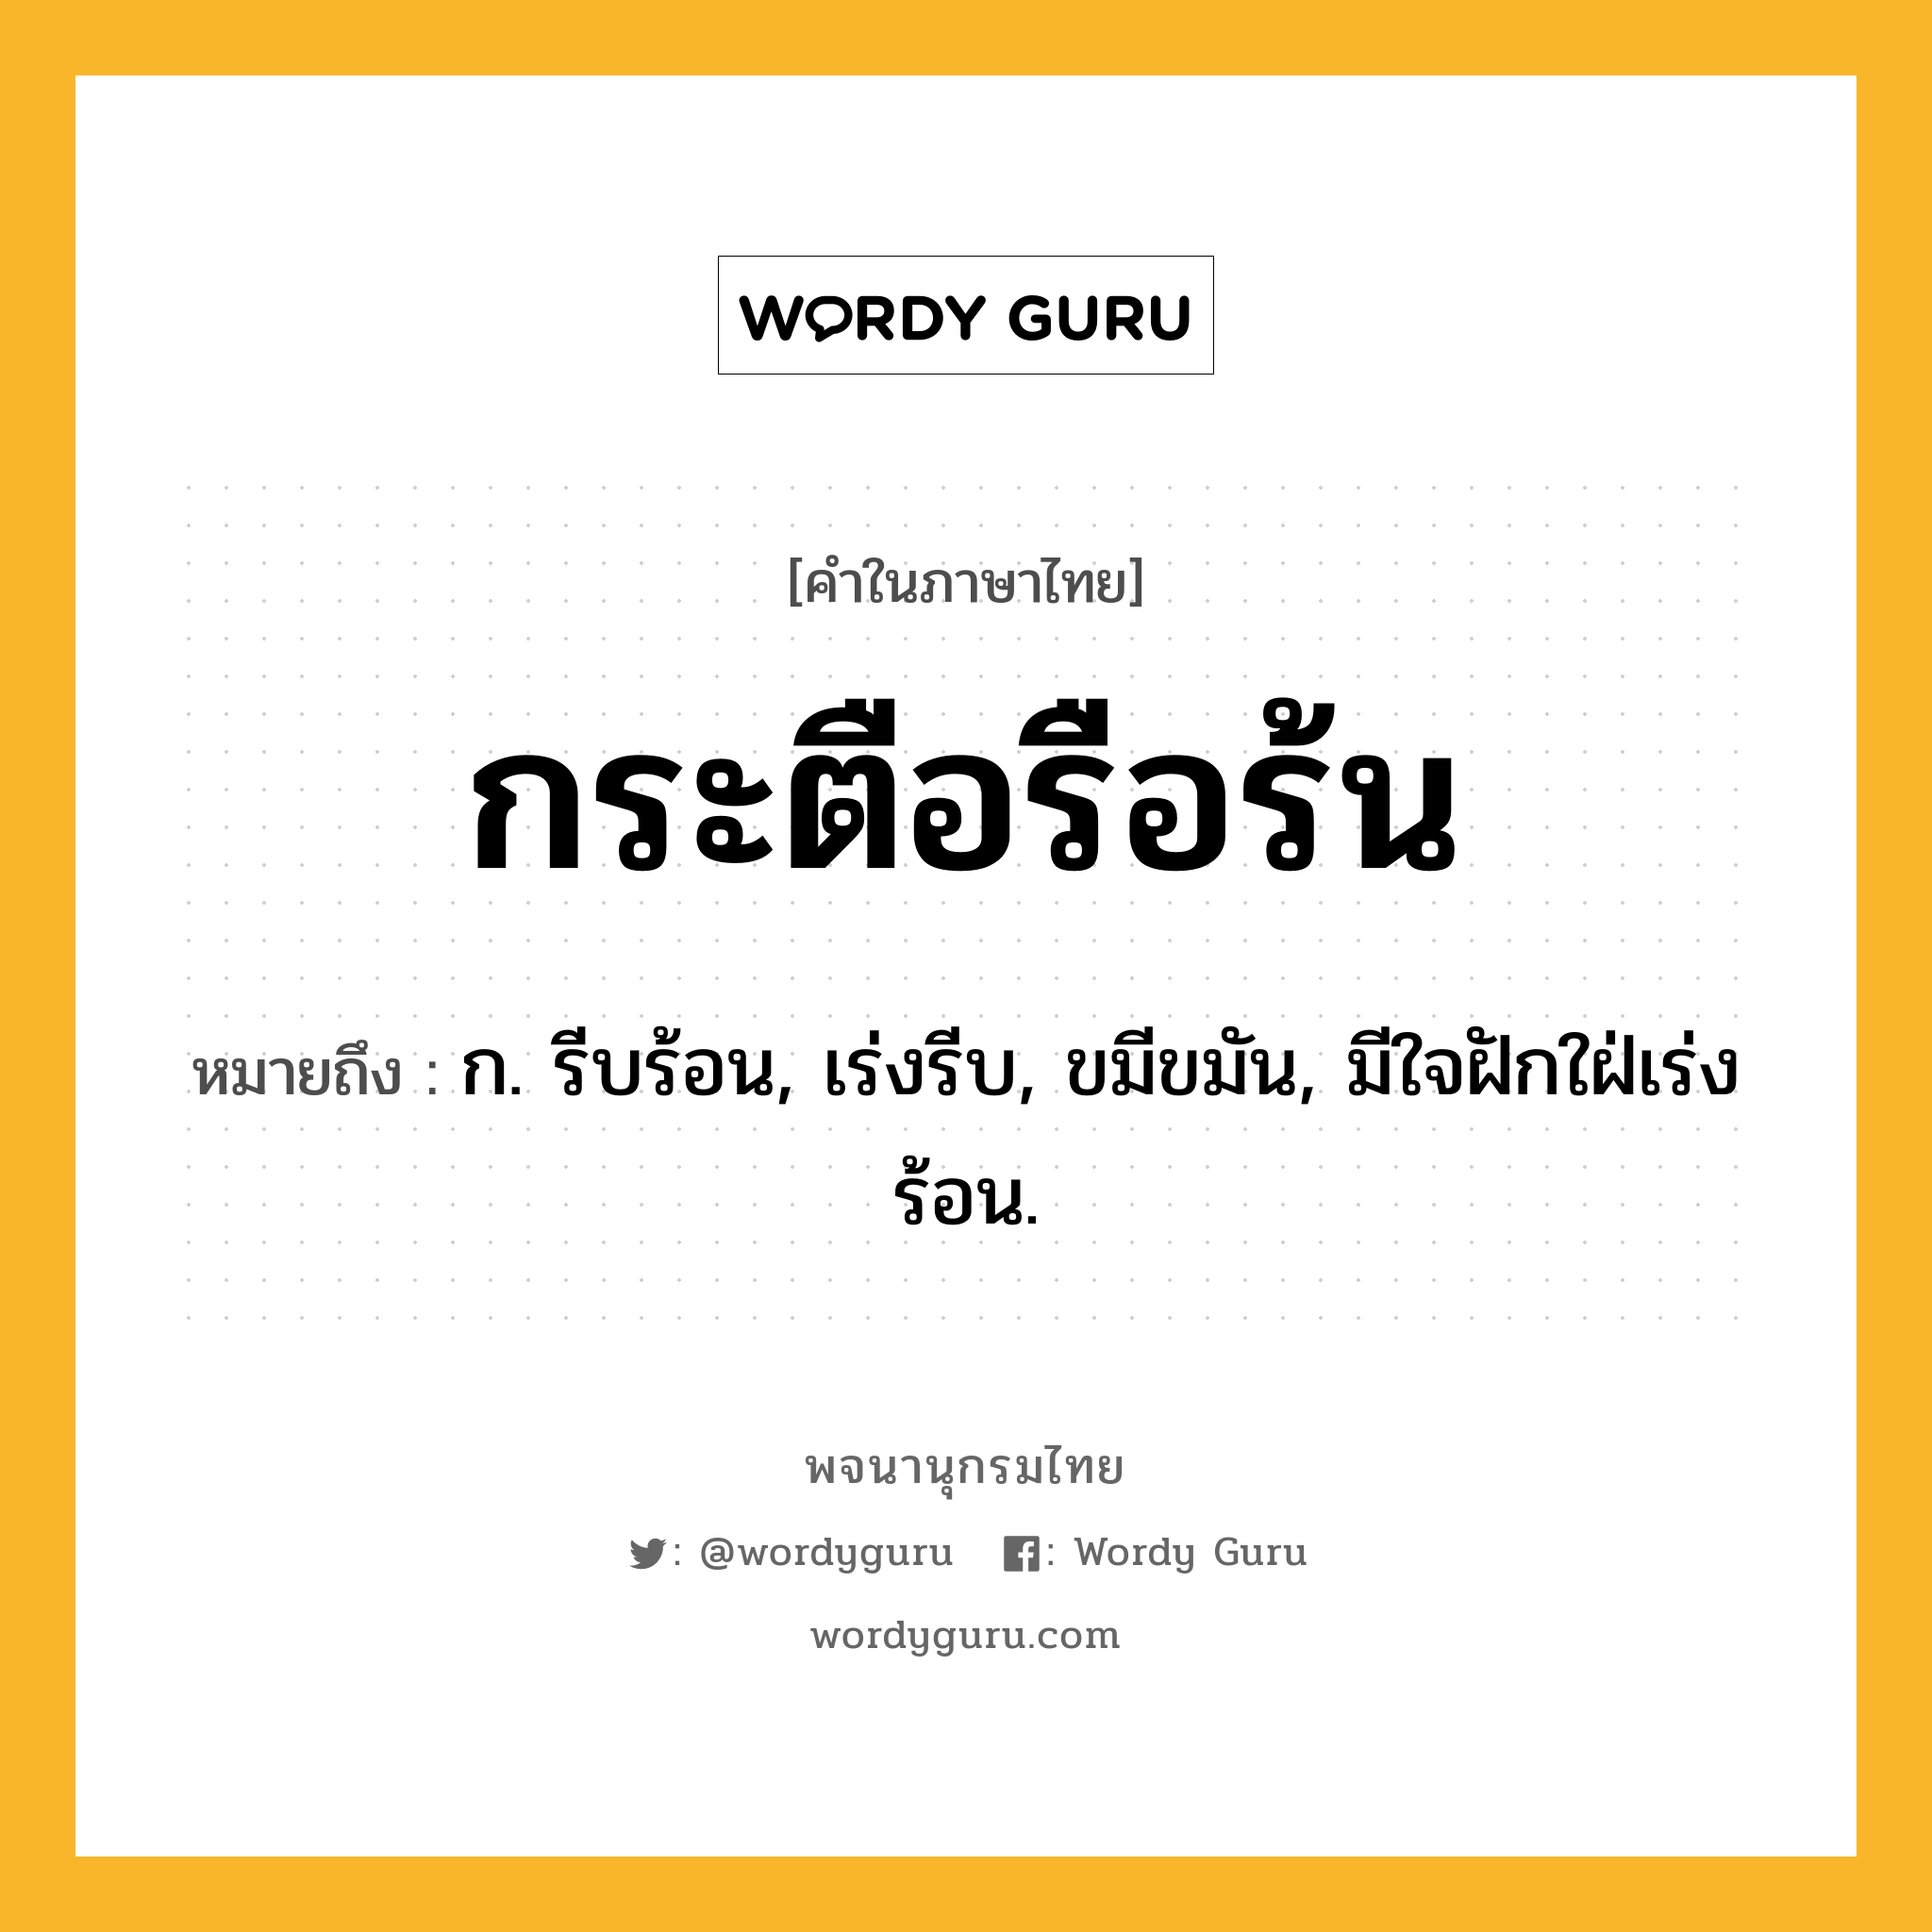 กระตือรือร้น ความหมาย หมายถึงอะไร?, คำในภาษาไทย กระตือรือร้น หมายถึง ก. รีบร้อน, เร่งรีบ, ขมีขมัน, มีใจฝักใฝ่เร่งร้อน.